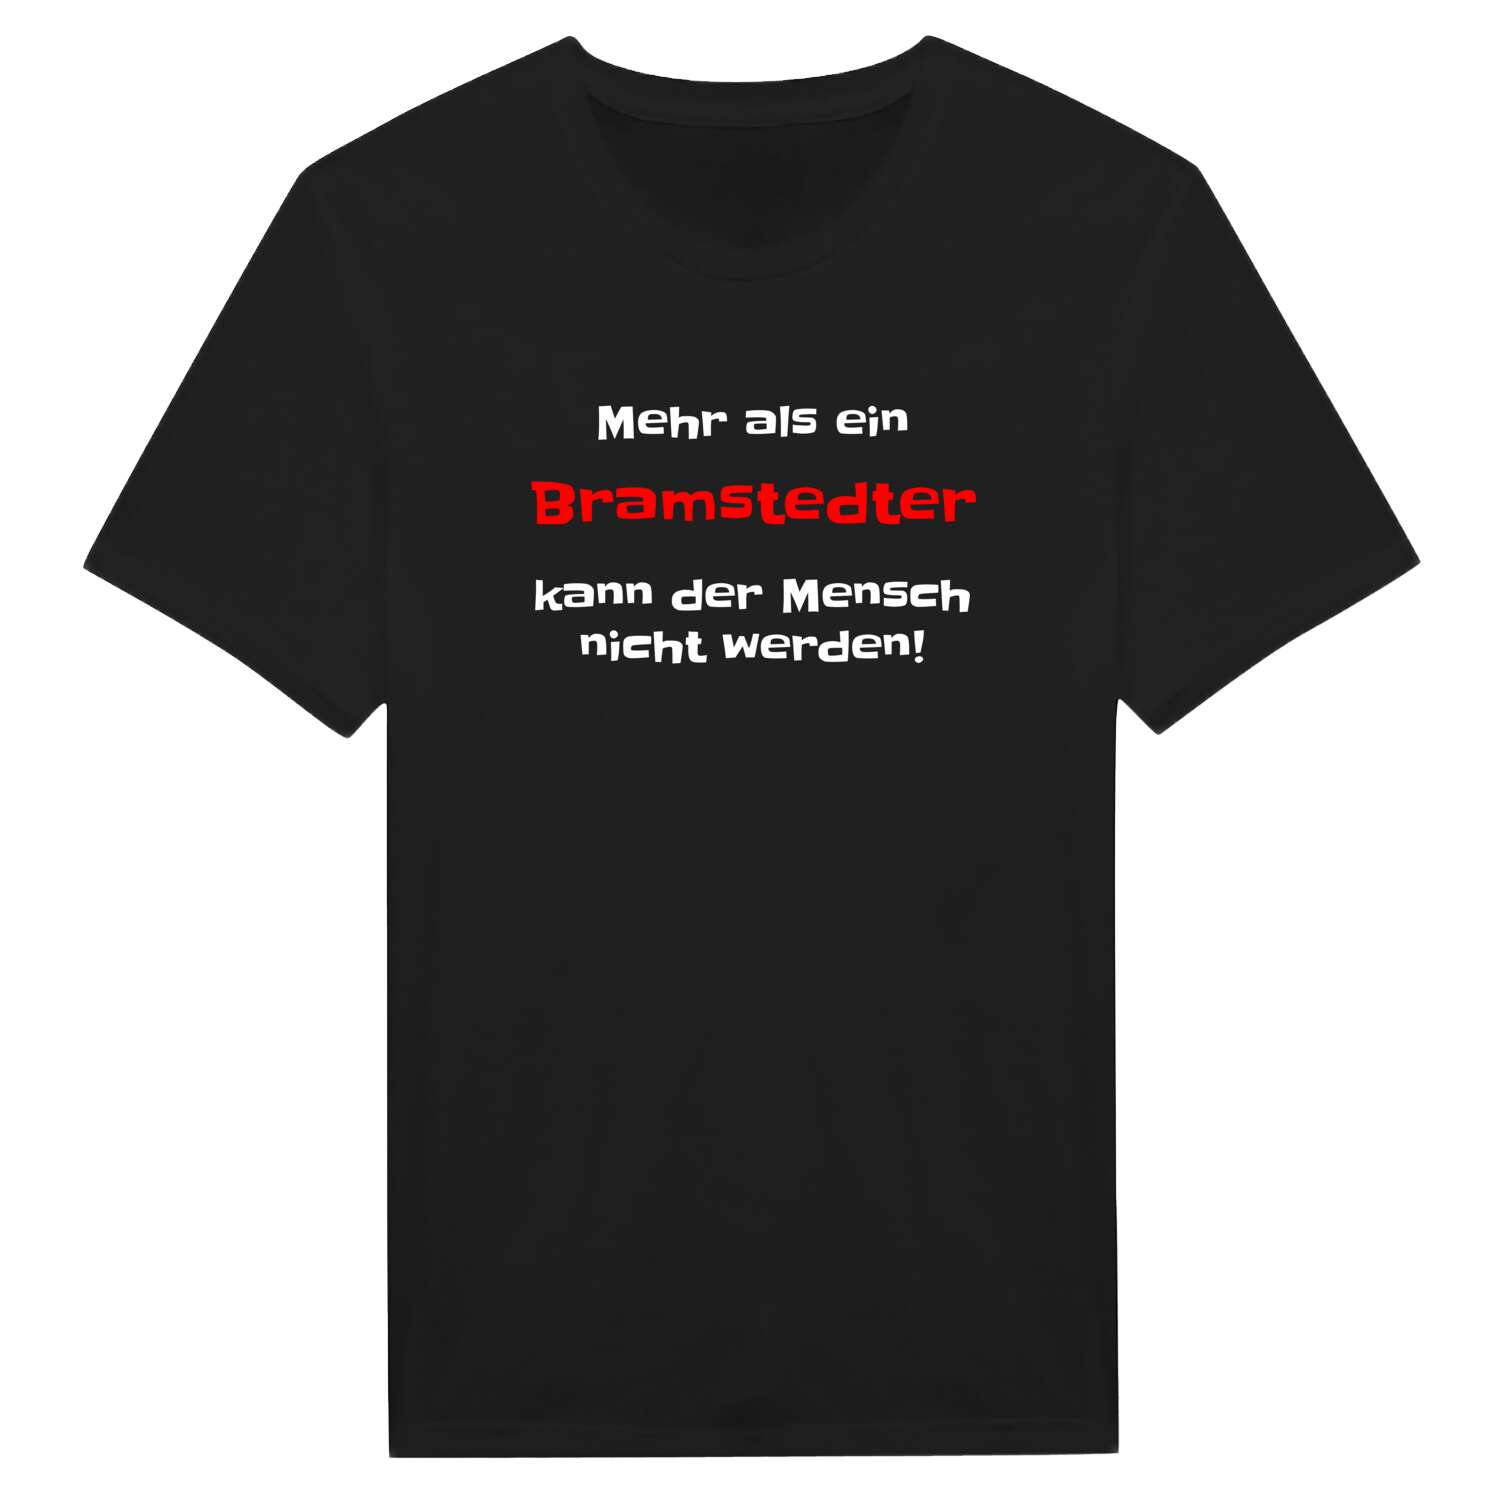 Bramstedt T-Shirt »Mehr als ein«